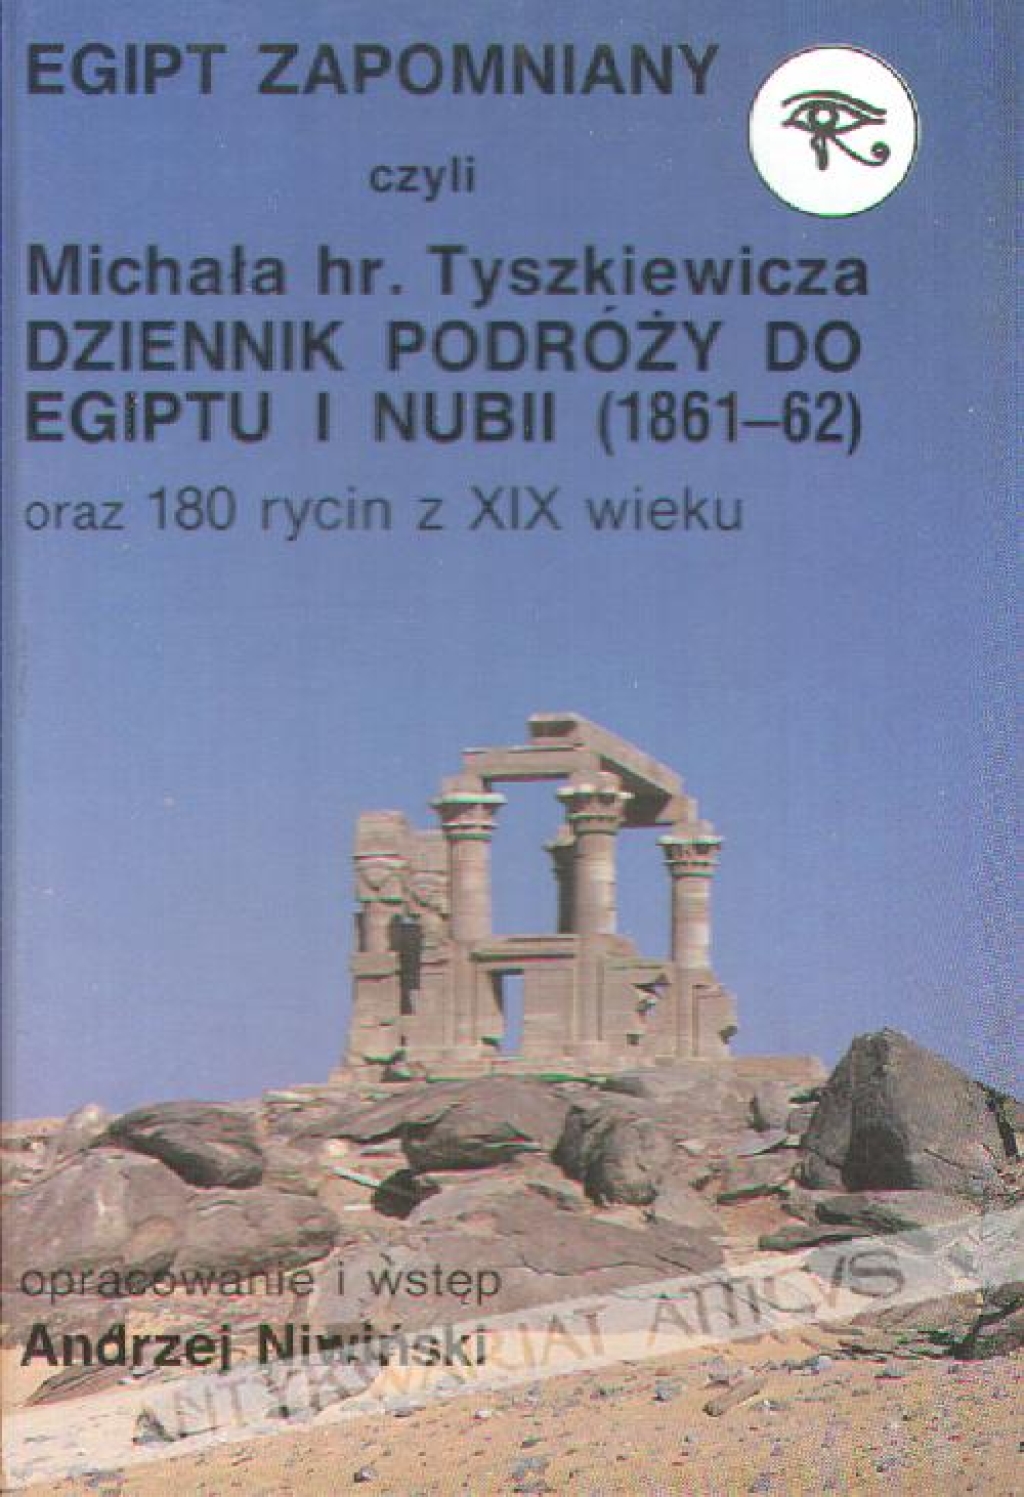 Egipt zapomniany czyli Michała hr. Tyszkiewicza Dziennik podróży do Egiptu i Nubii (1861-1862) oraz 180 rycin z XIX wieku